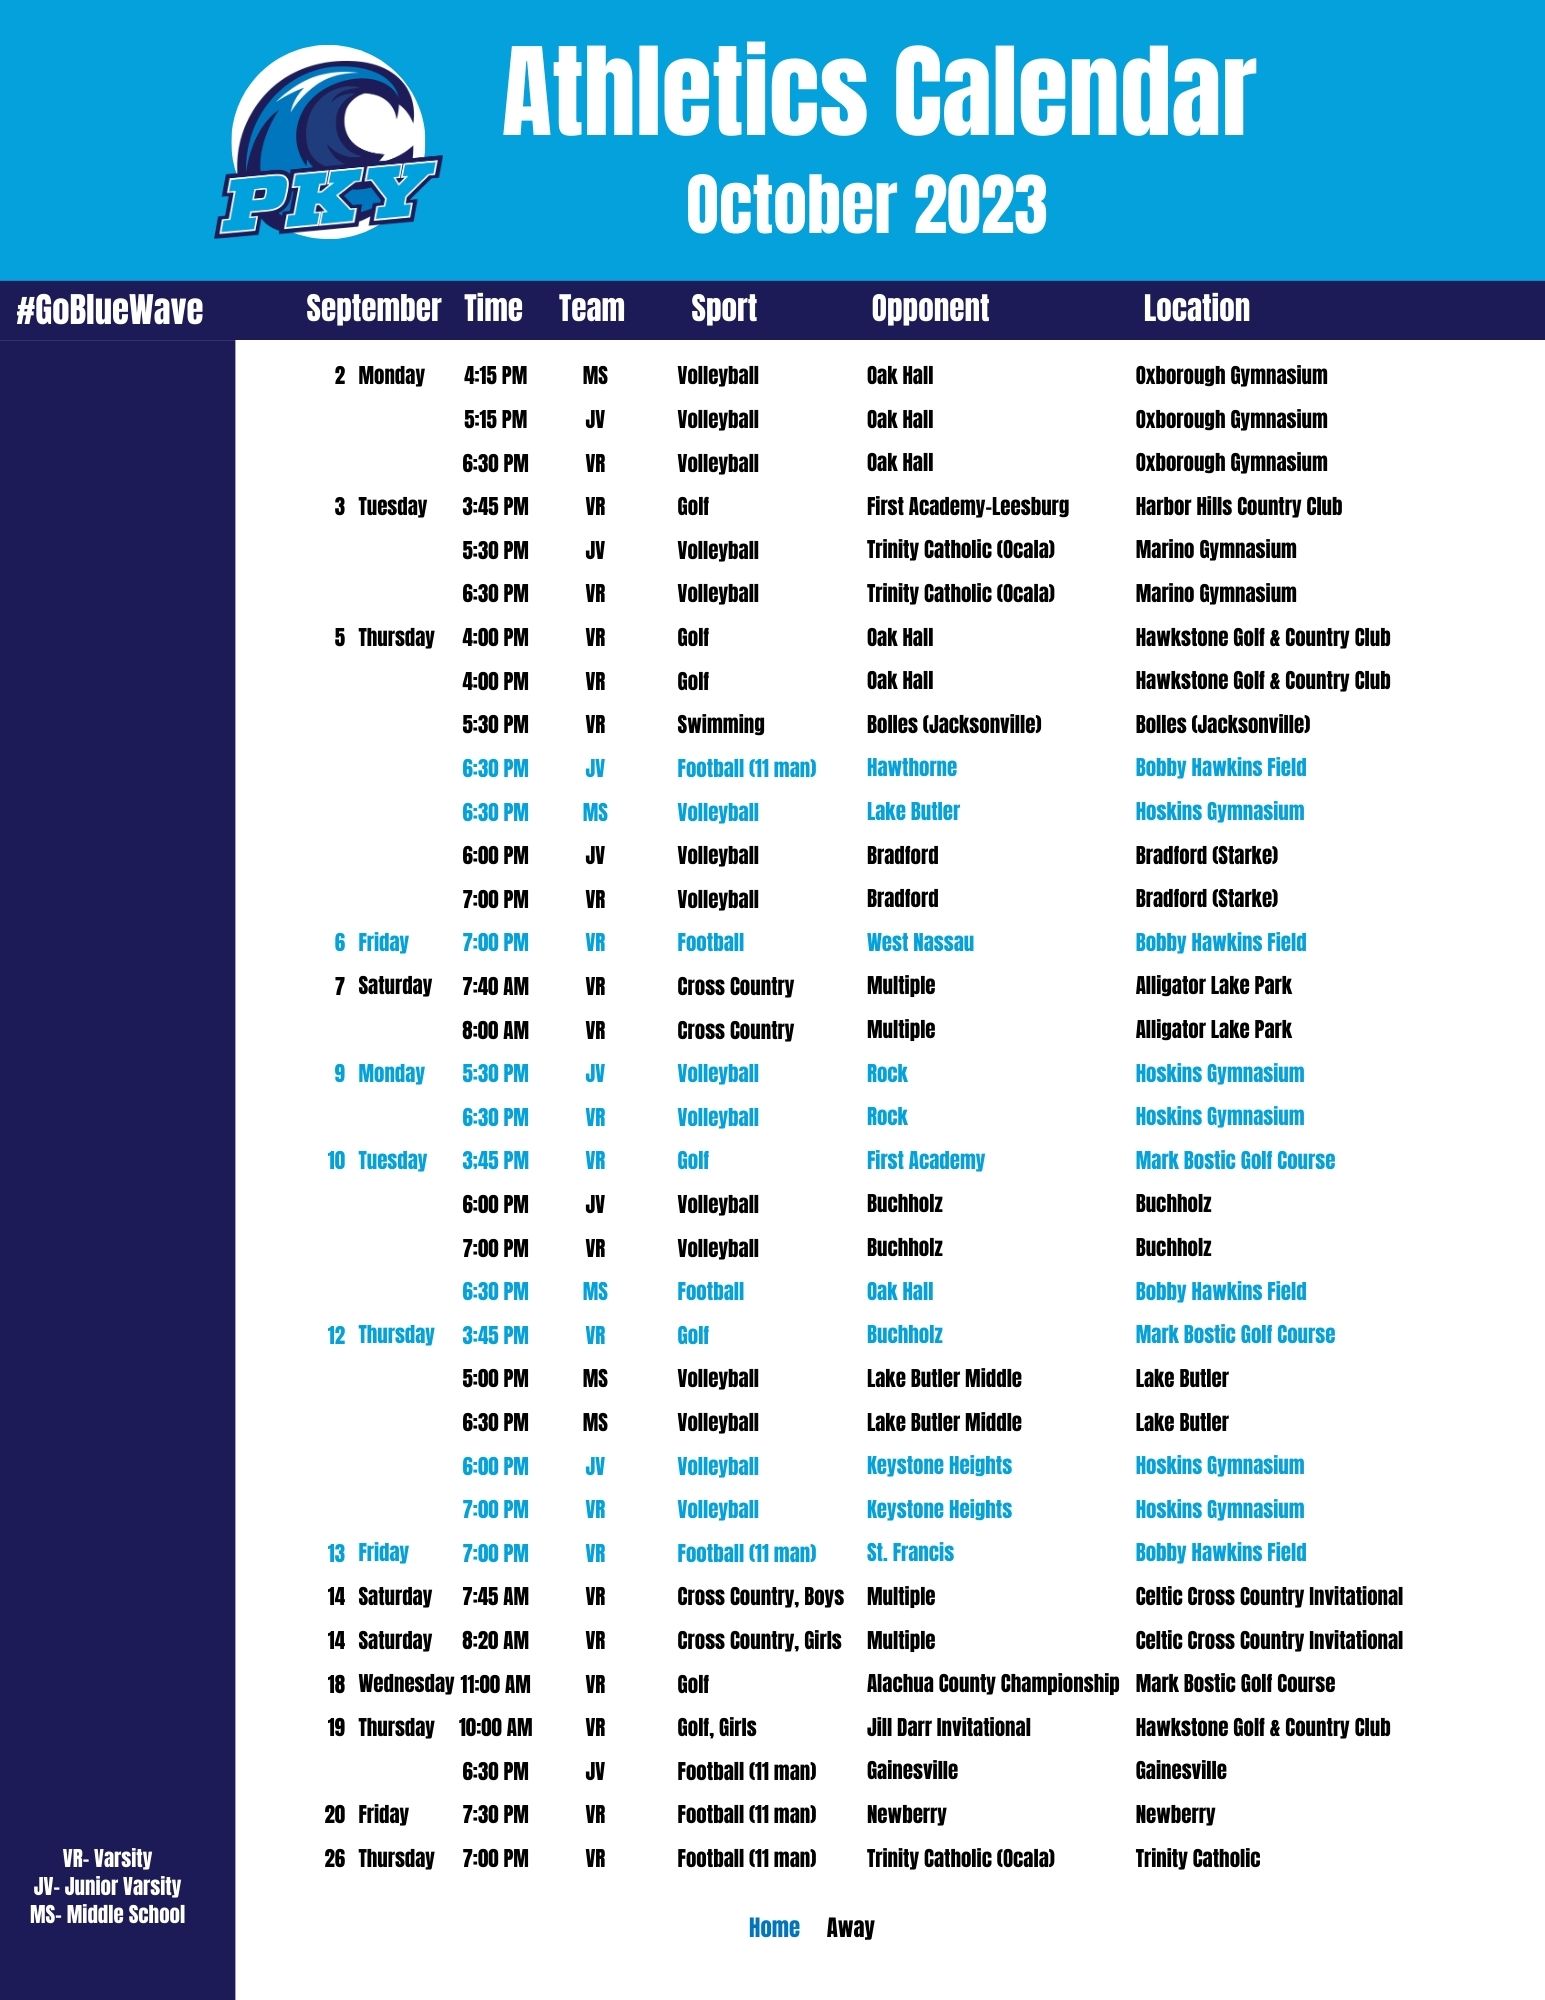 Athletics & Facilities Calendar PK Yonge